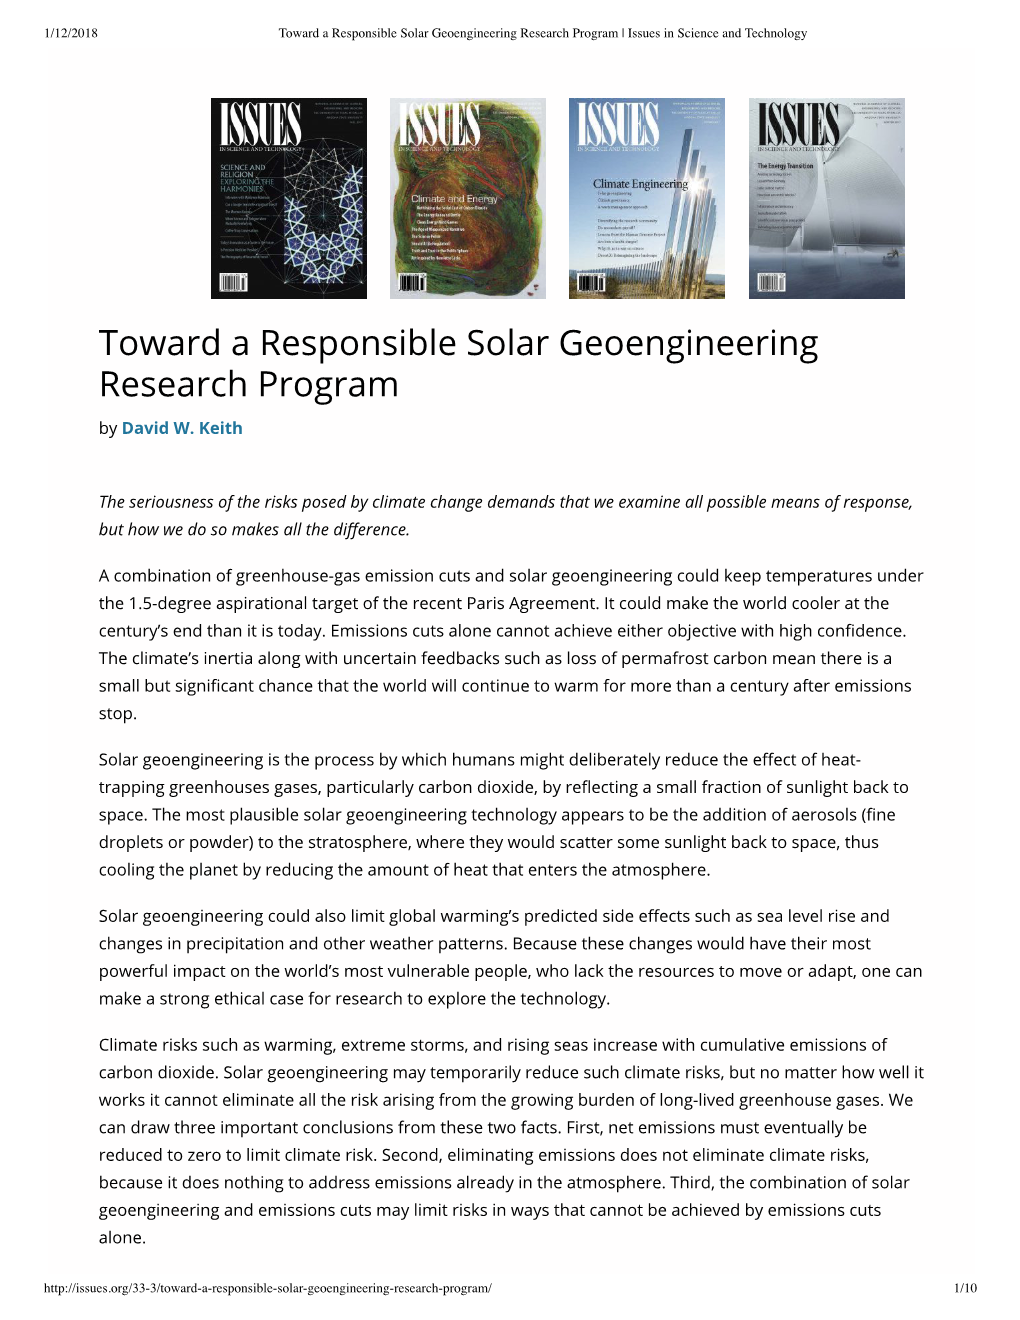 Toward a Responsible Solar Geoengineeri...Ram